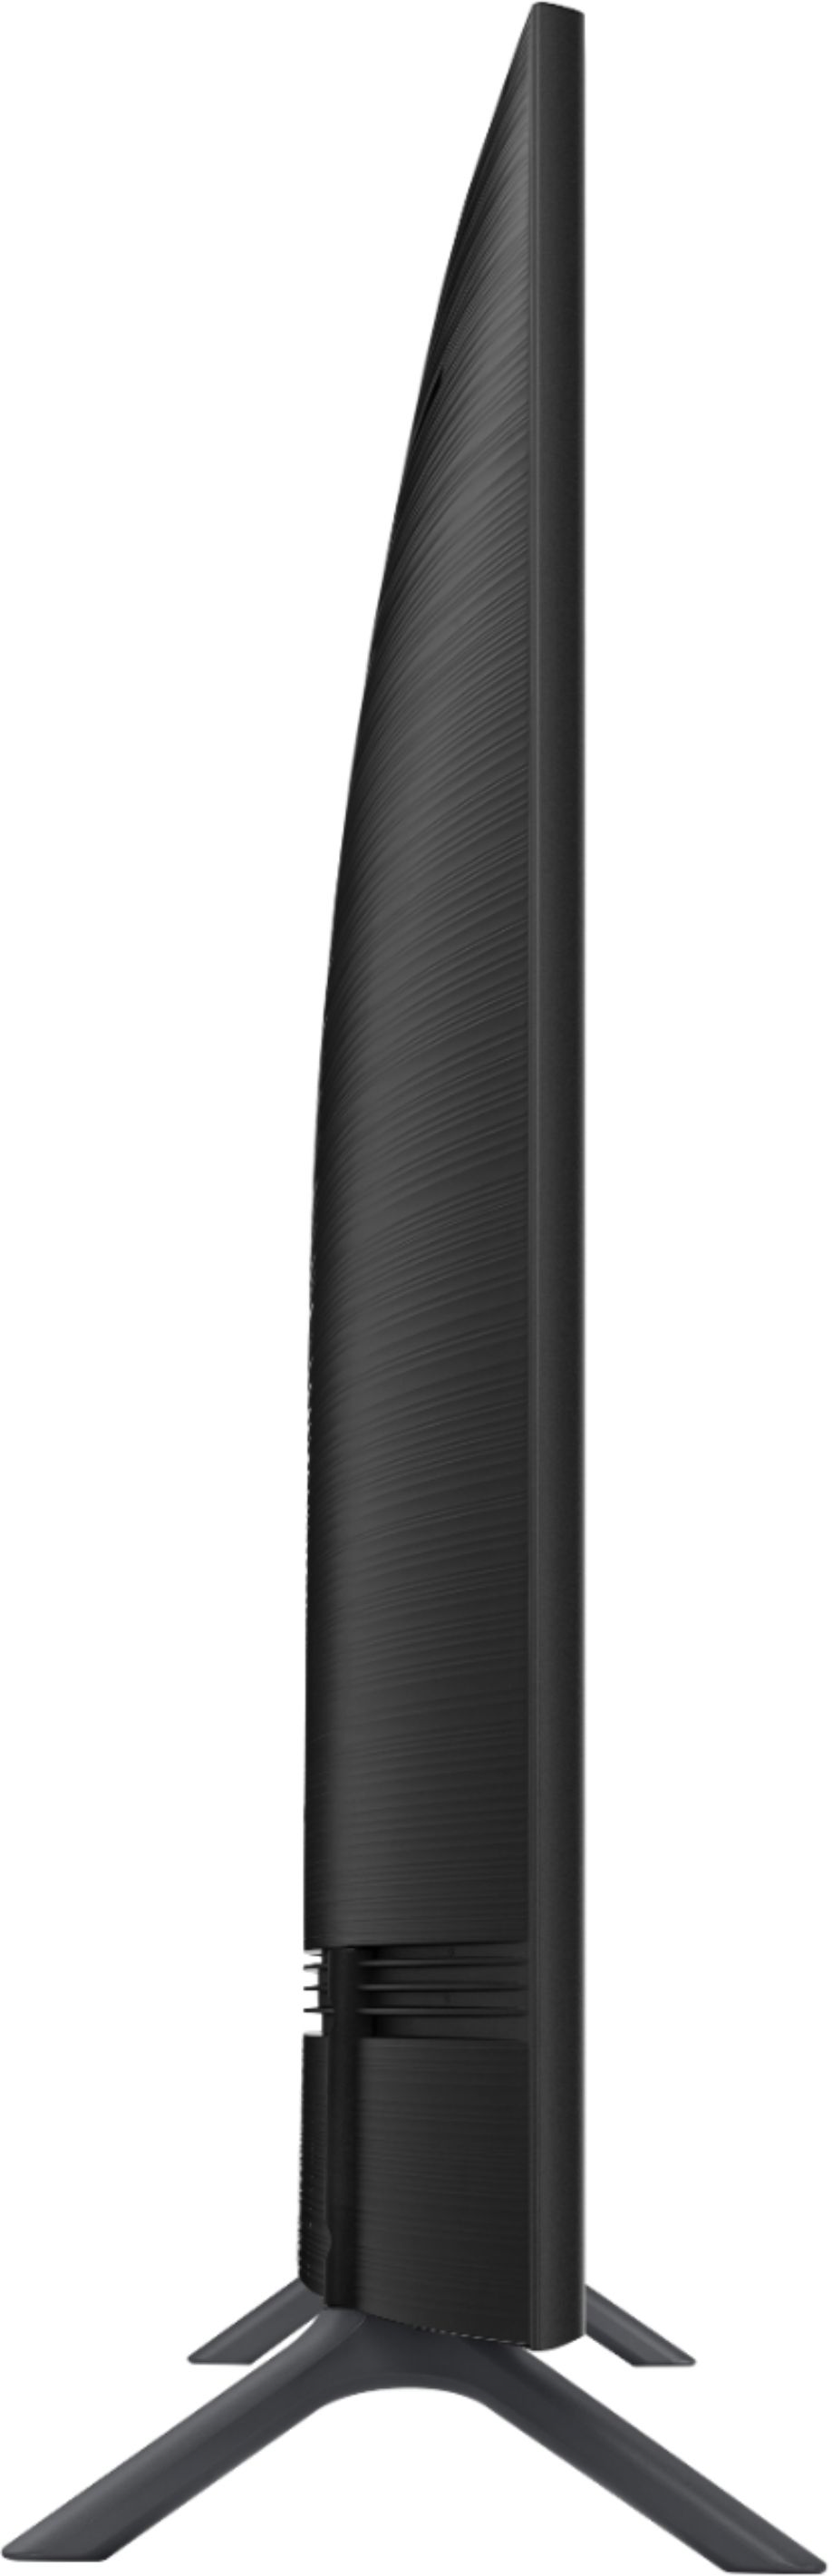 Genbruge Udsæt oase Best Buy: Samsung 65" Class LED NU7300 Series Curved 2160p Smart 4K UHD TV  with HDR UN65NU7300FXZA